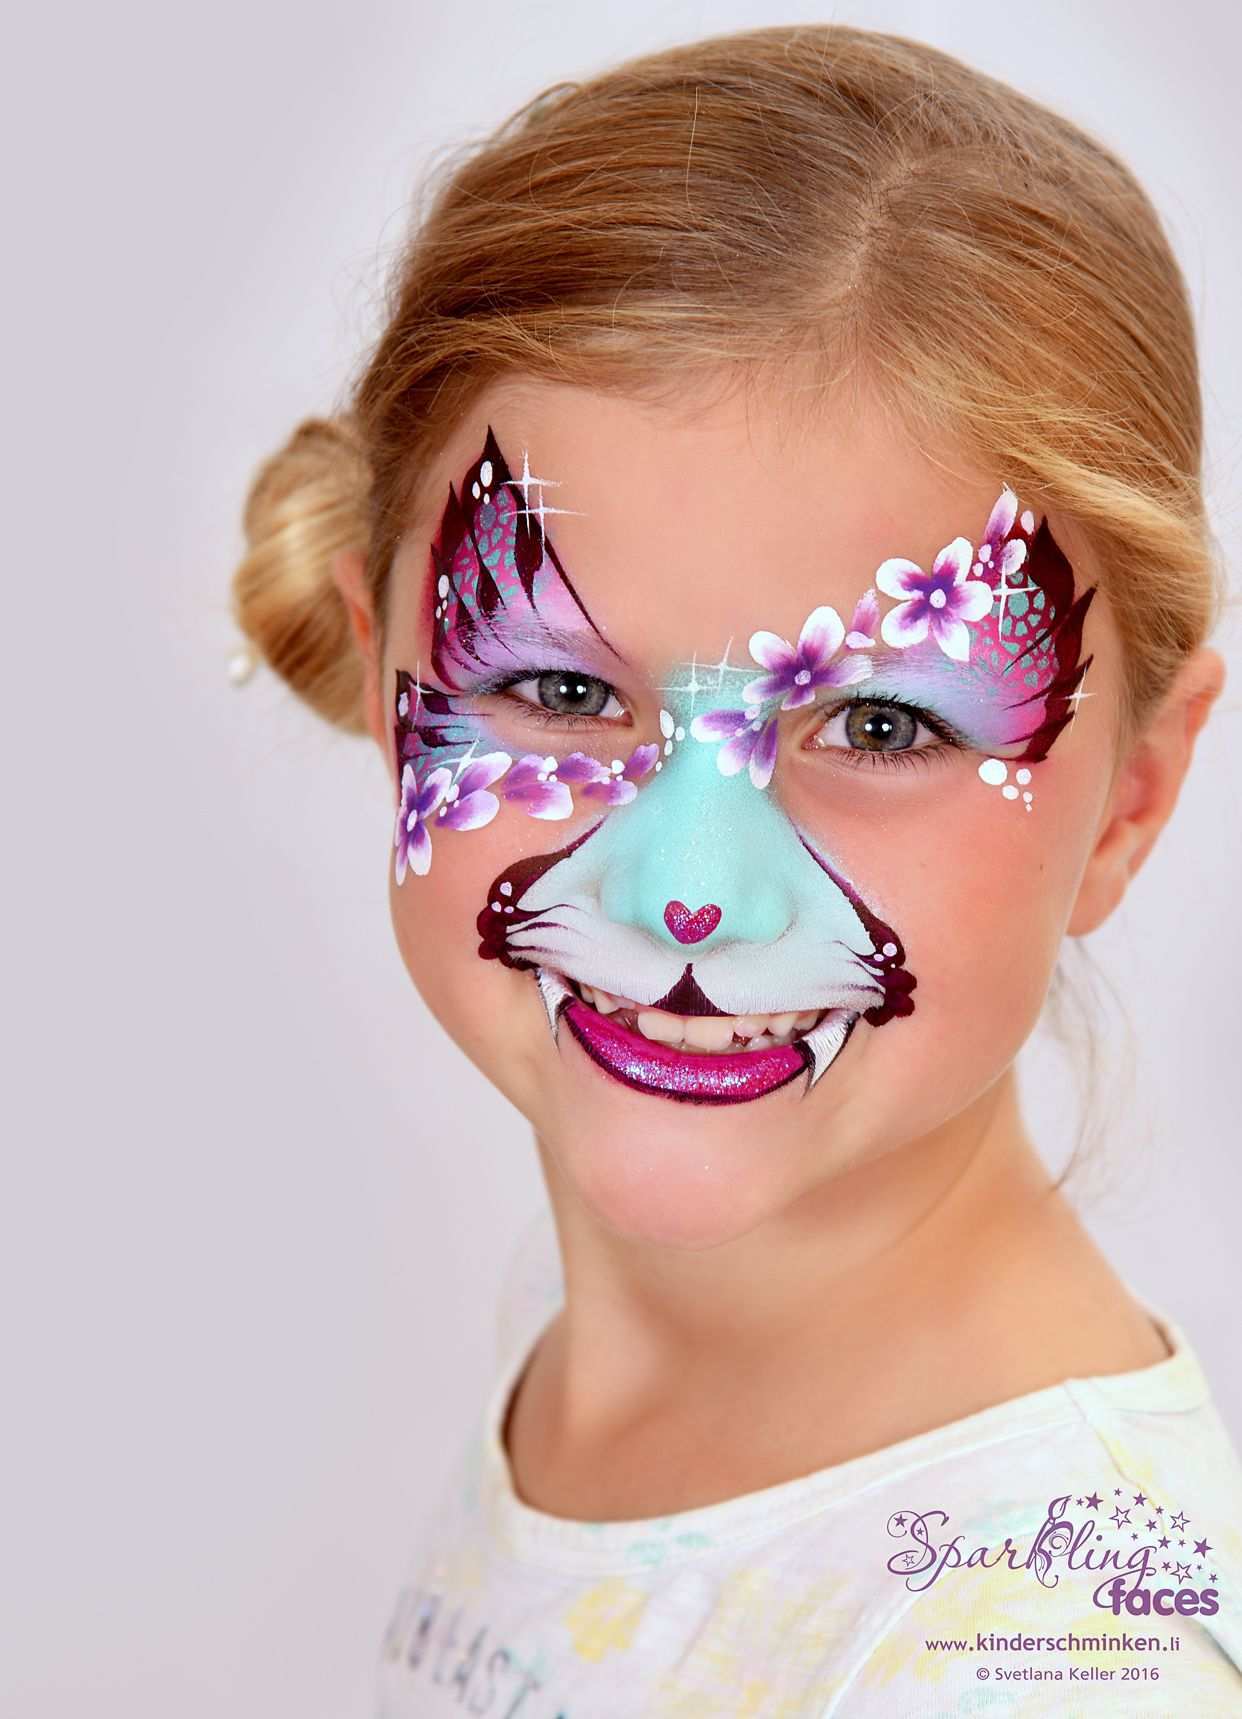 Www Kinderschminken Li Kinderschminken Kinderschminken Vorlagen Schminkfarben Kaufen Kinderschminken Kurse Schminkfarben Schweiz Face Painting Kinde